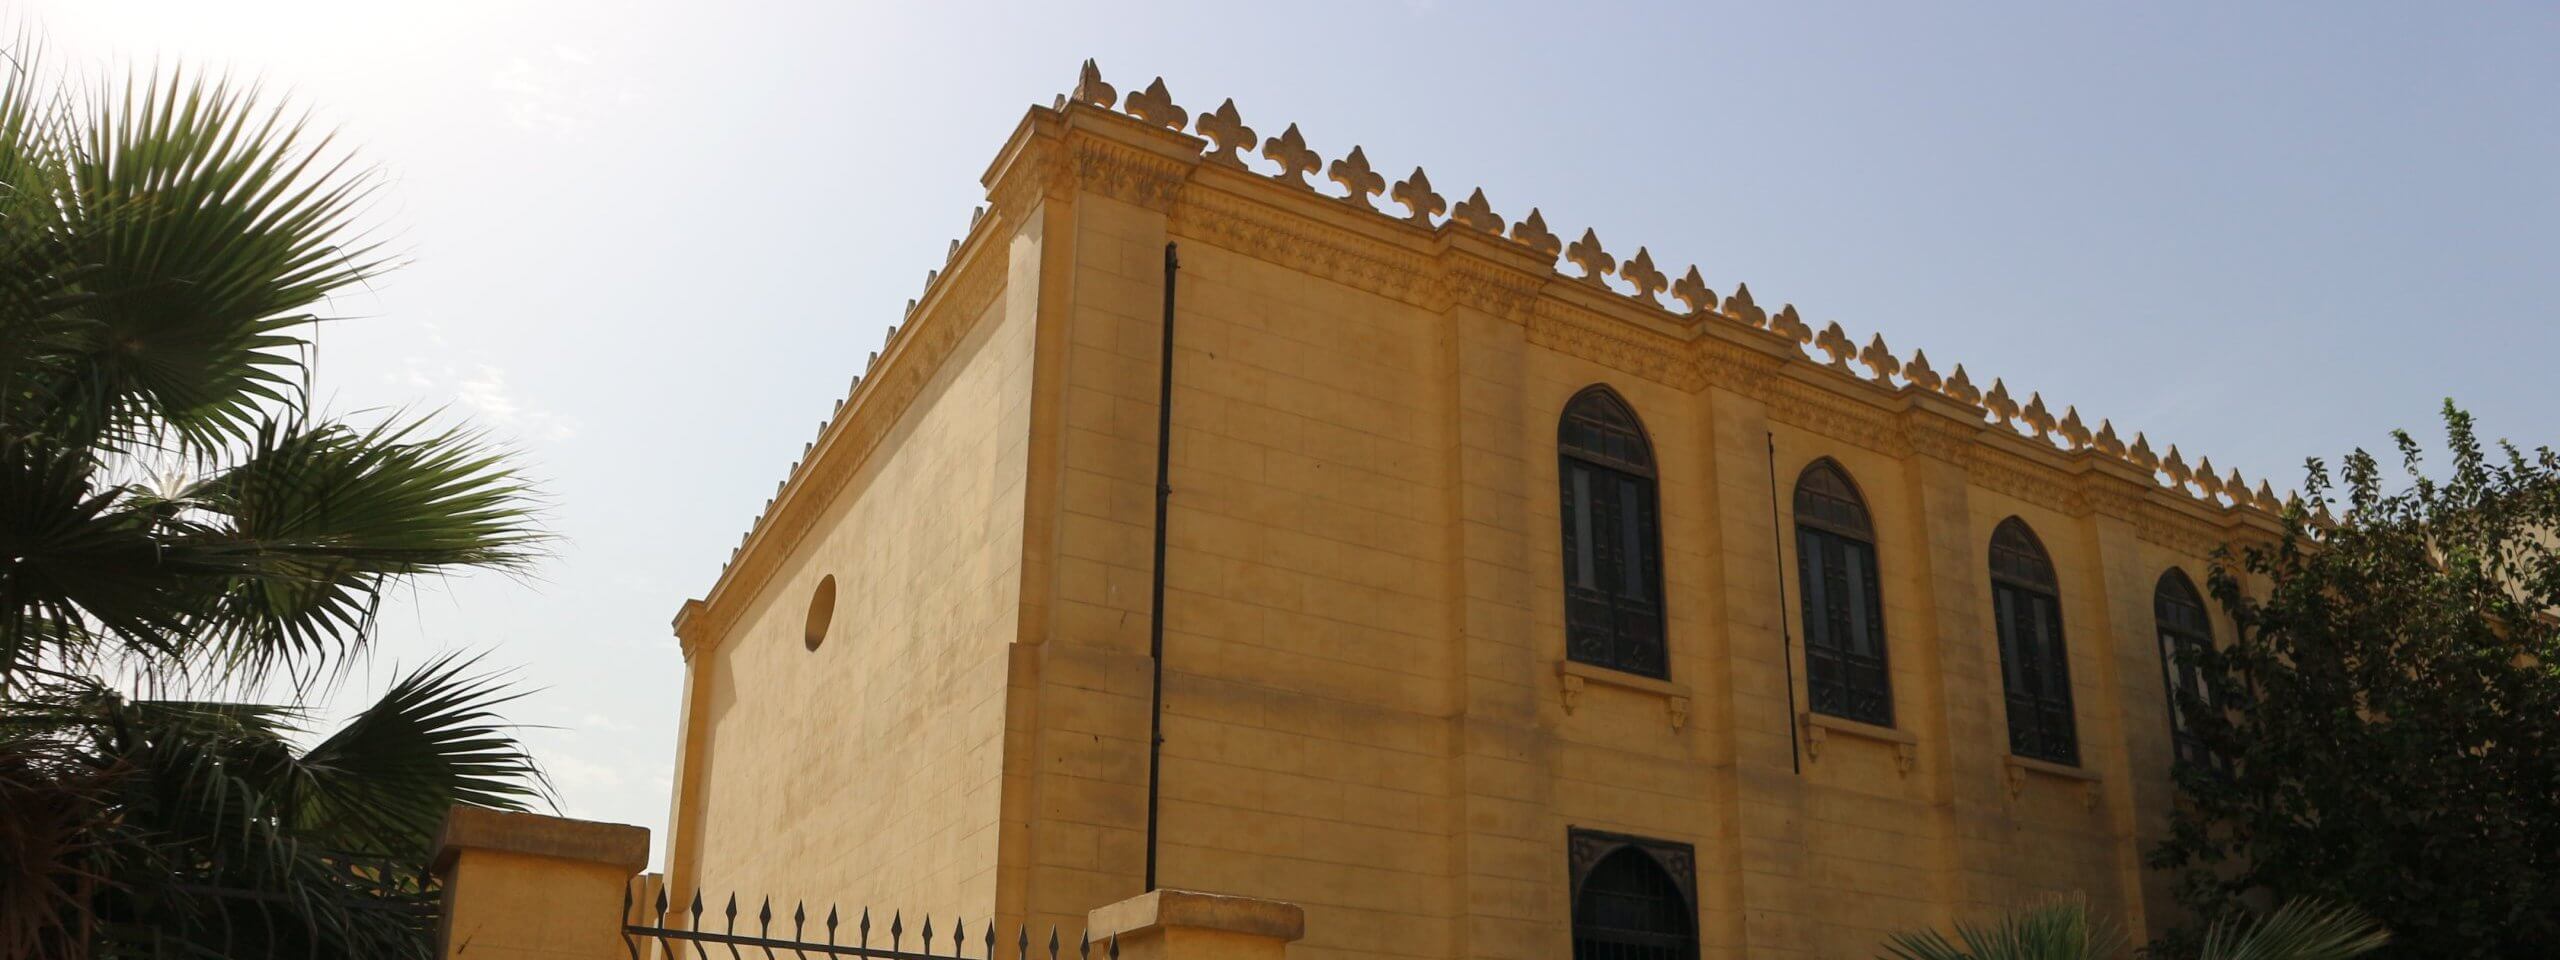 Außenansicht und Fassade der Ben-Ezra-Synagoge in Kairo